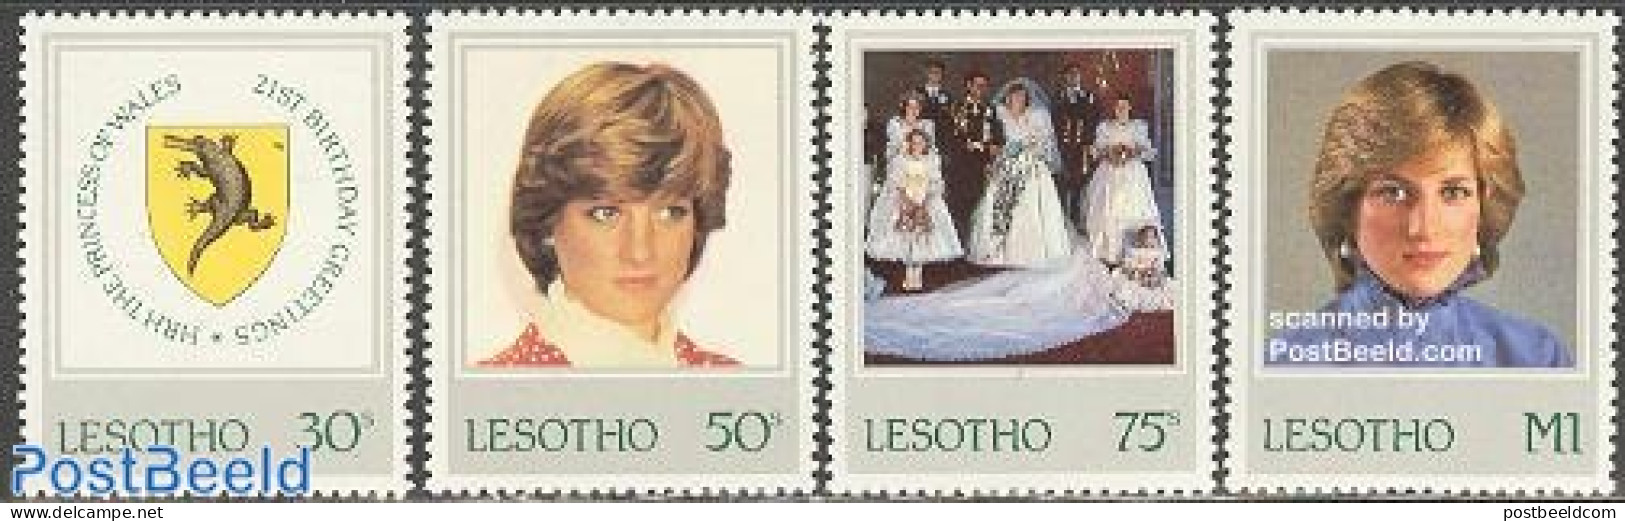 Lesotho 1982 Princess Diana 21st Birthday 4v, Mint NH, History - Nature - Charles & Diana - Coat Of Arms - Kings & Que.. - Royalties, Royals